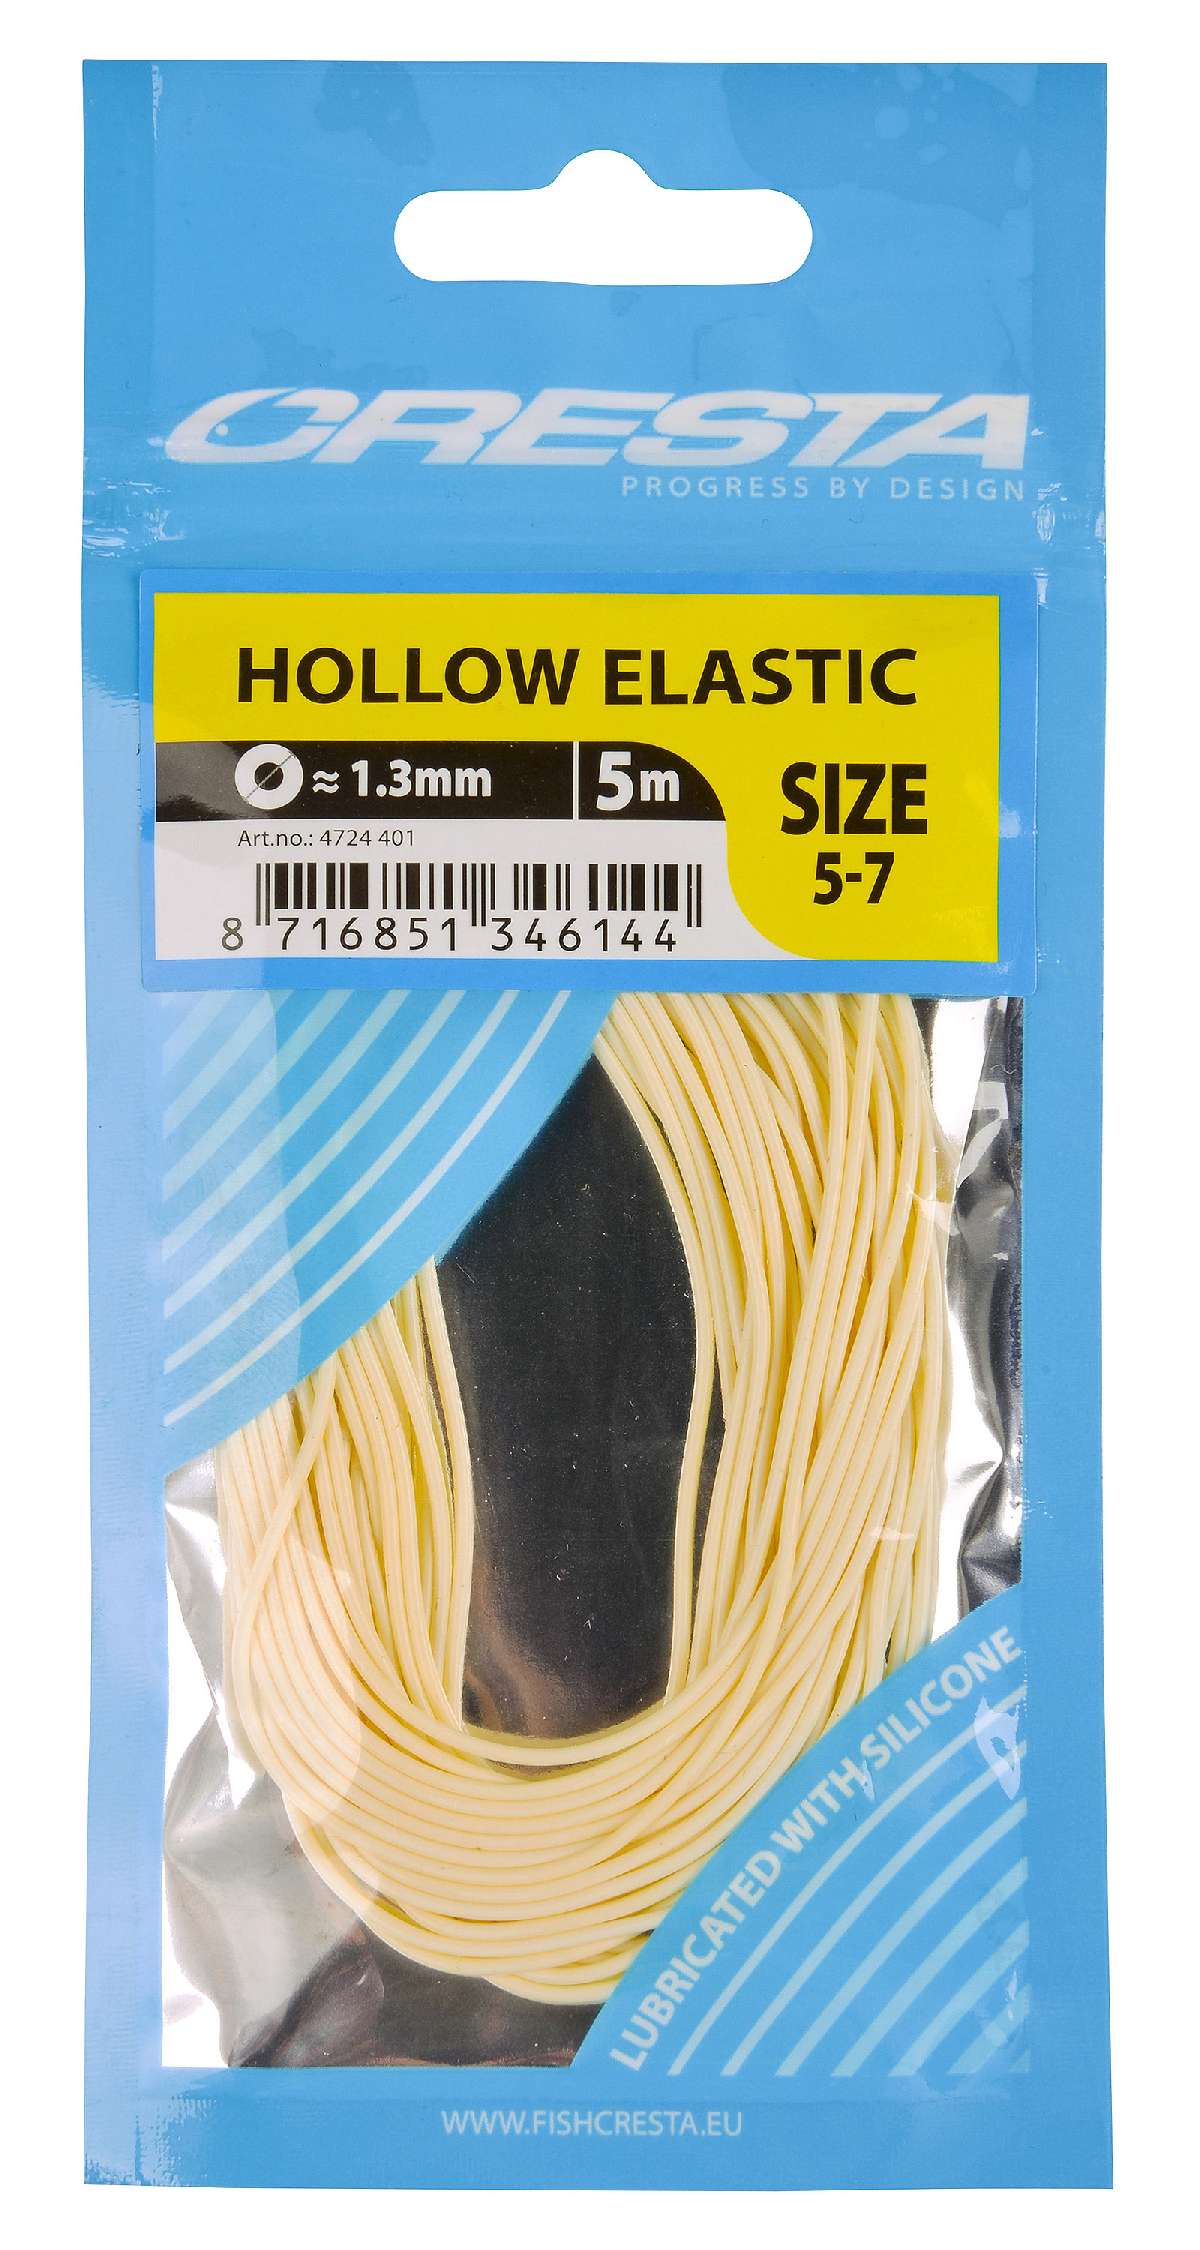 Cresta Hollow Elastic 1.3 mm  5 m  White